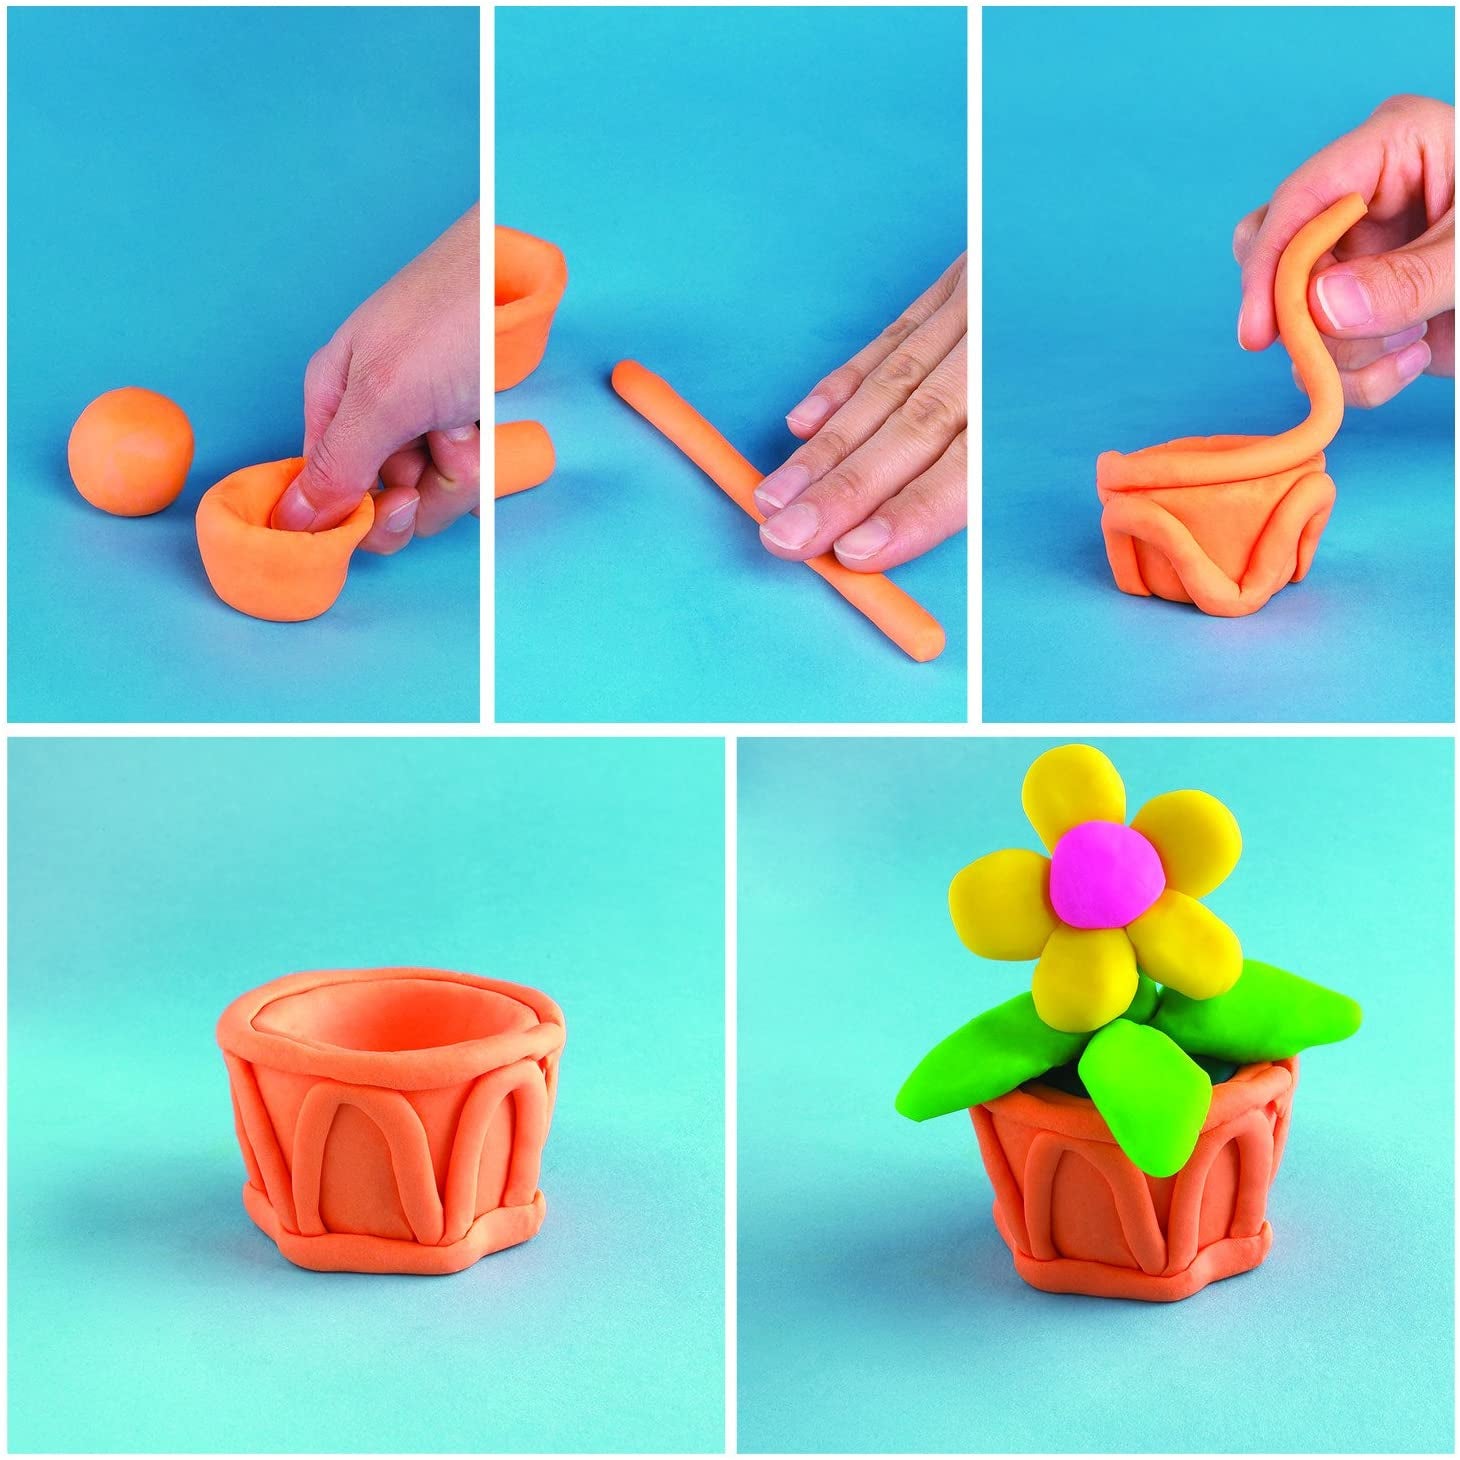 Play-Doh - Compuesto de modelado de colores